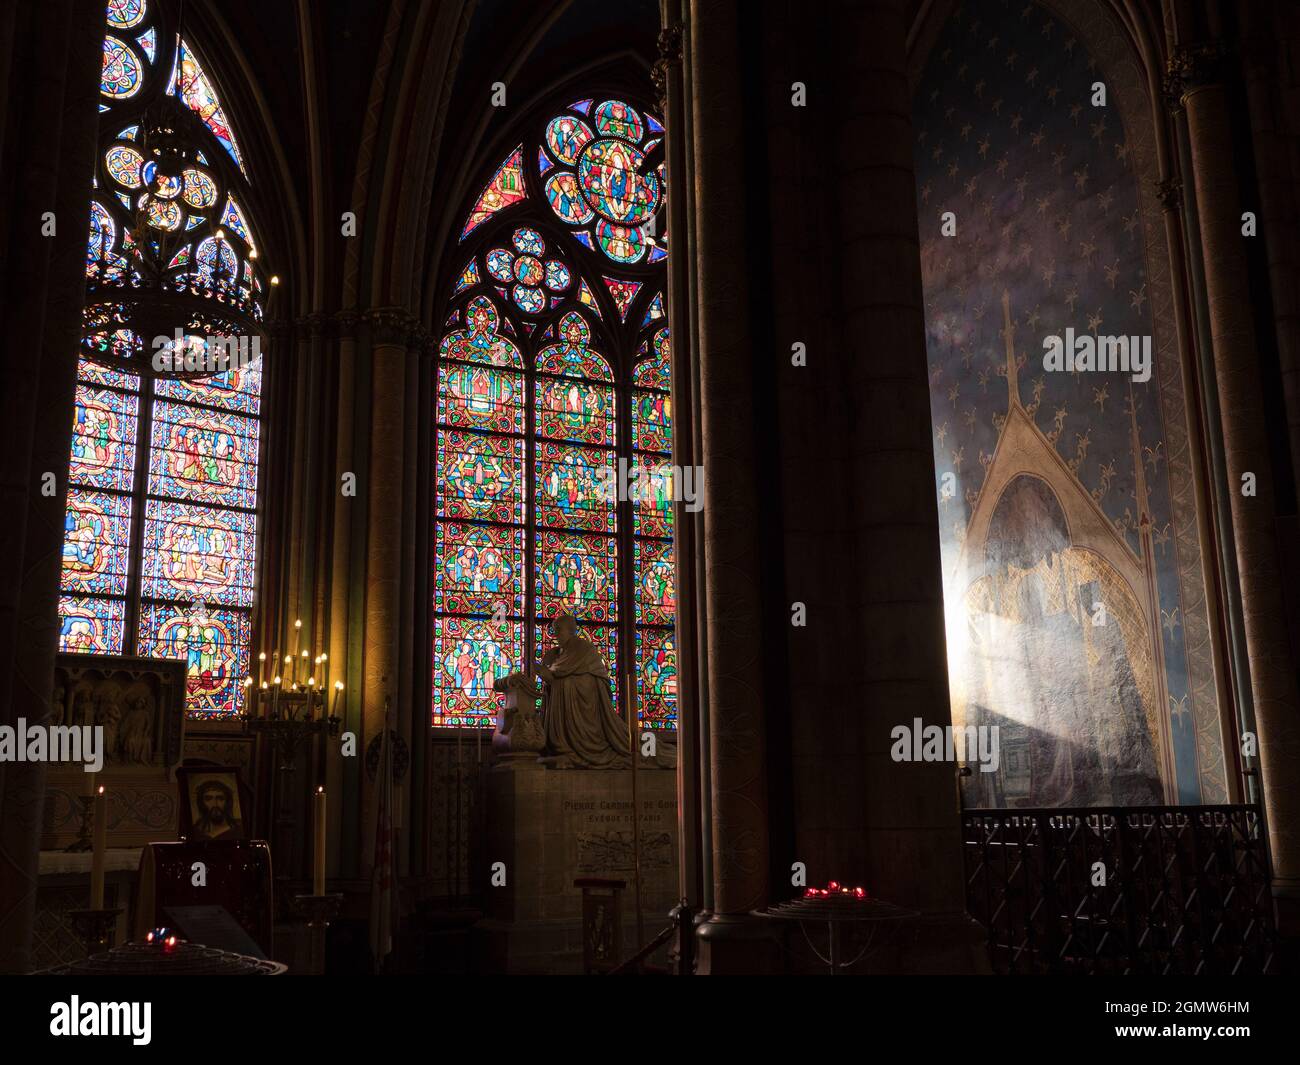 Paris, Frankreich - 19. September 2018 Notre-Dame, die berühmte mittelalterliche katholische Kathedrale, befindet sich an der ële de la Cit im vierten Arrondissement von Paris Stockfoto